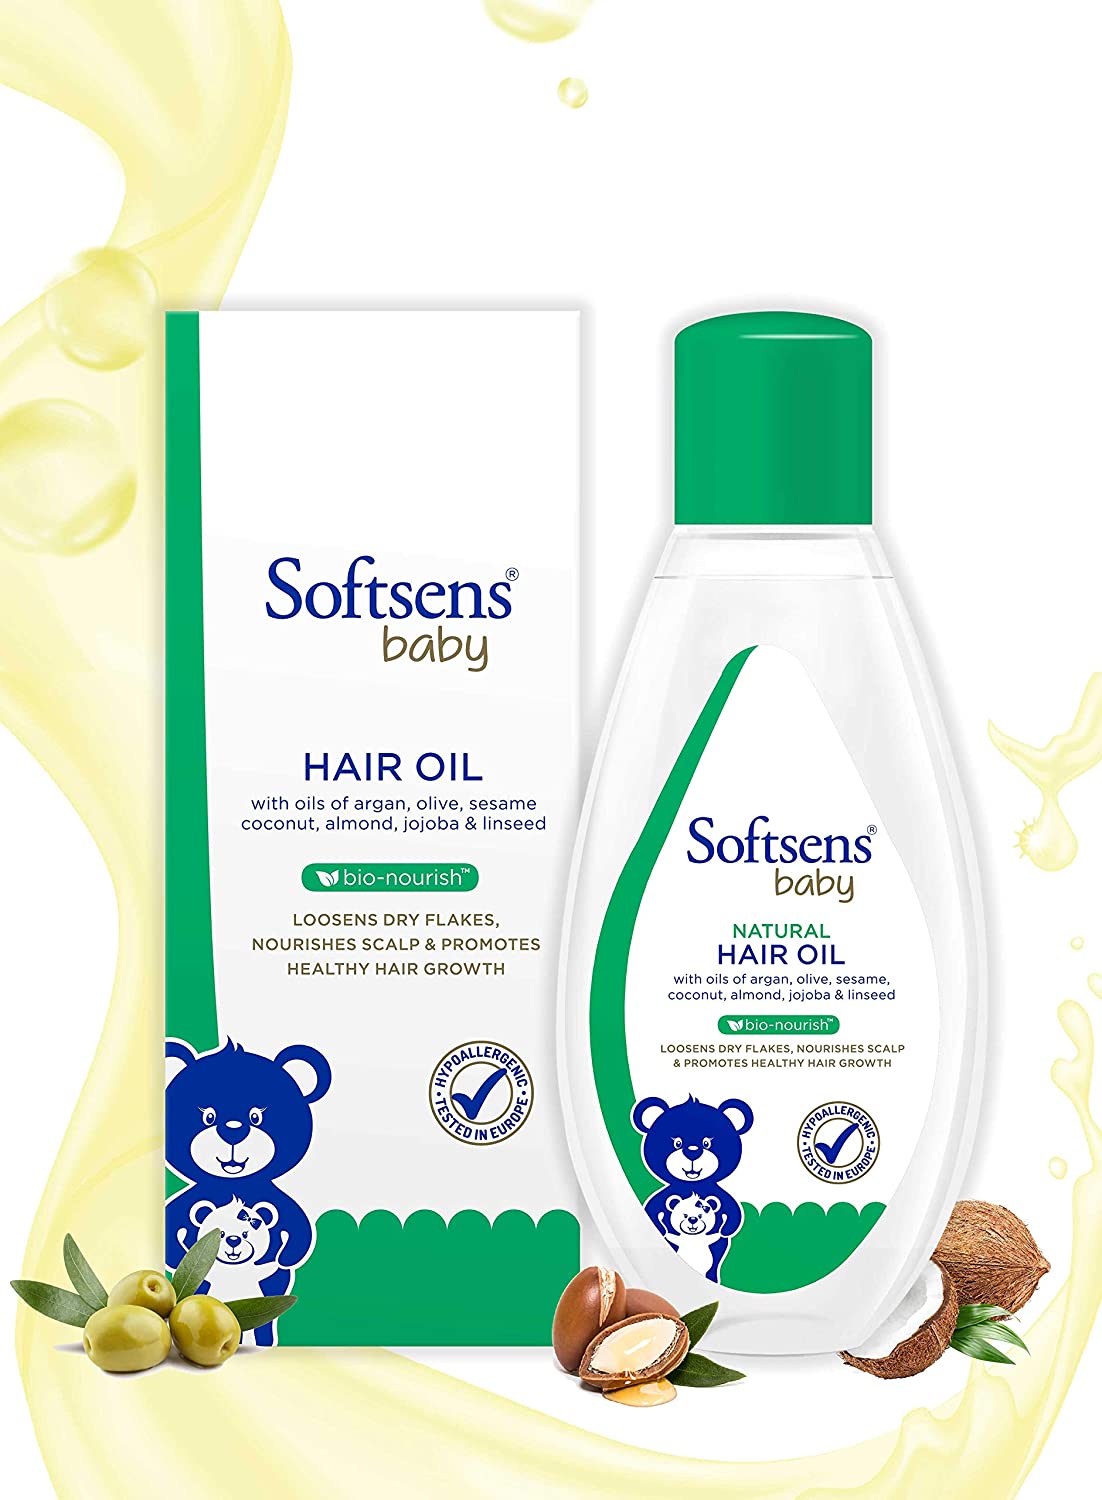 Softsens Baby- Natural Hair Oil